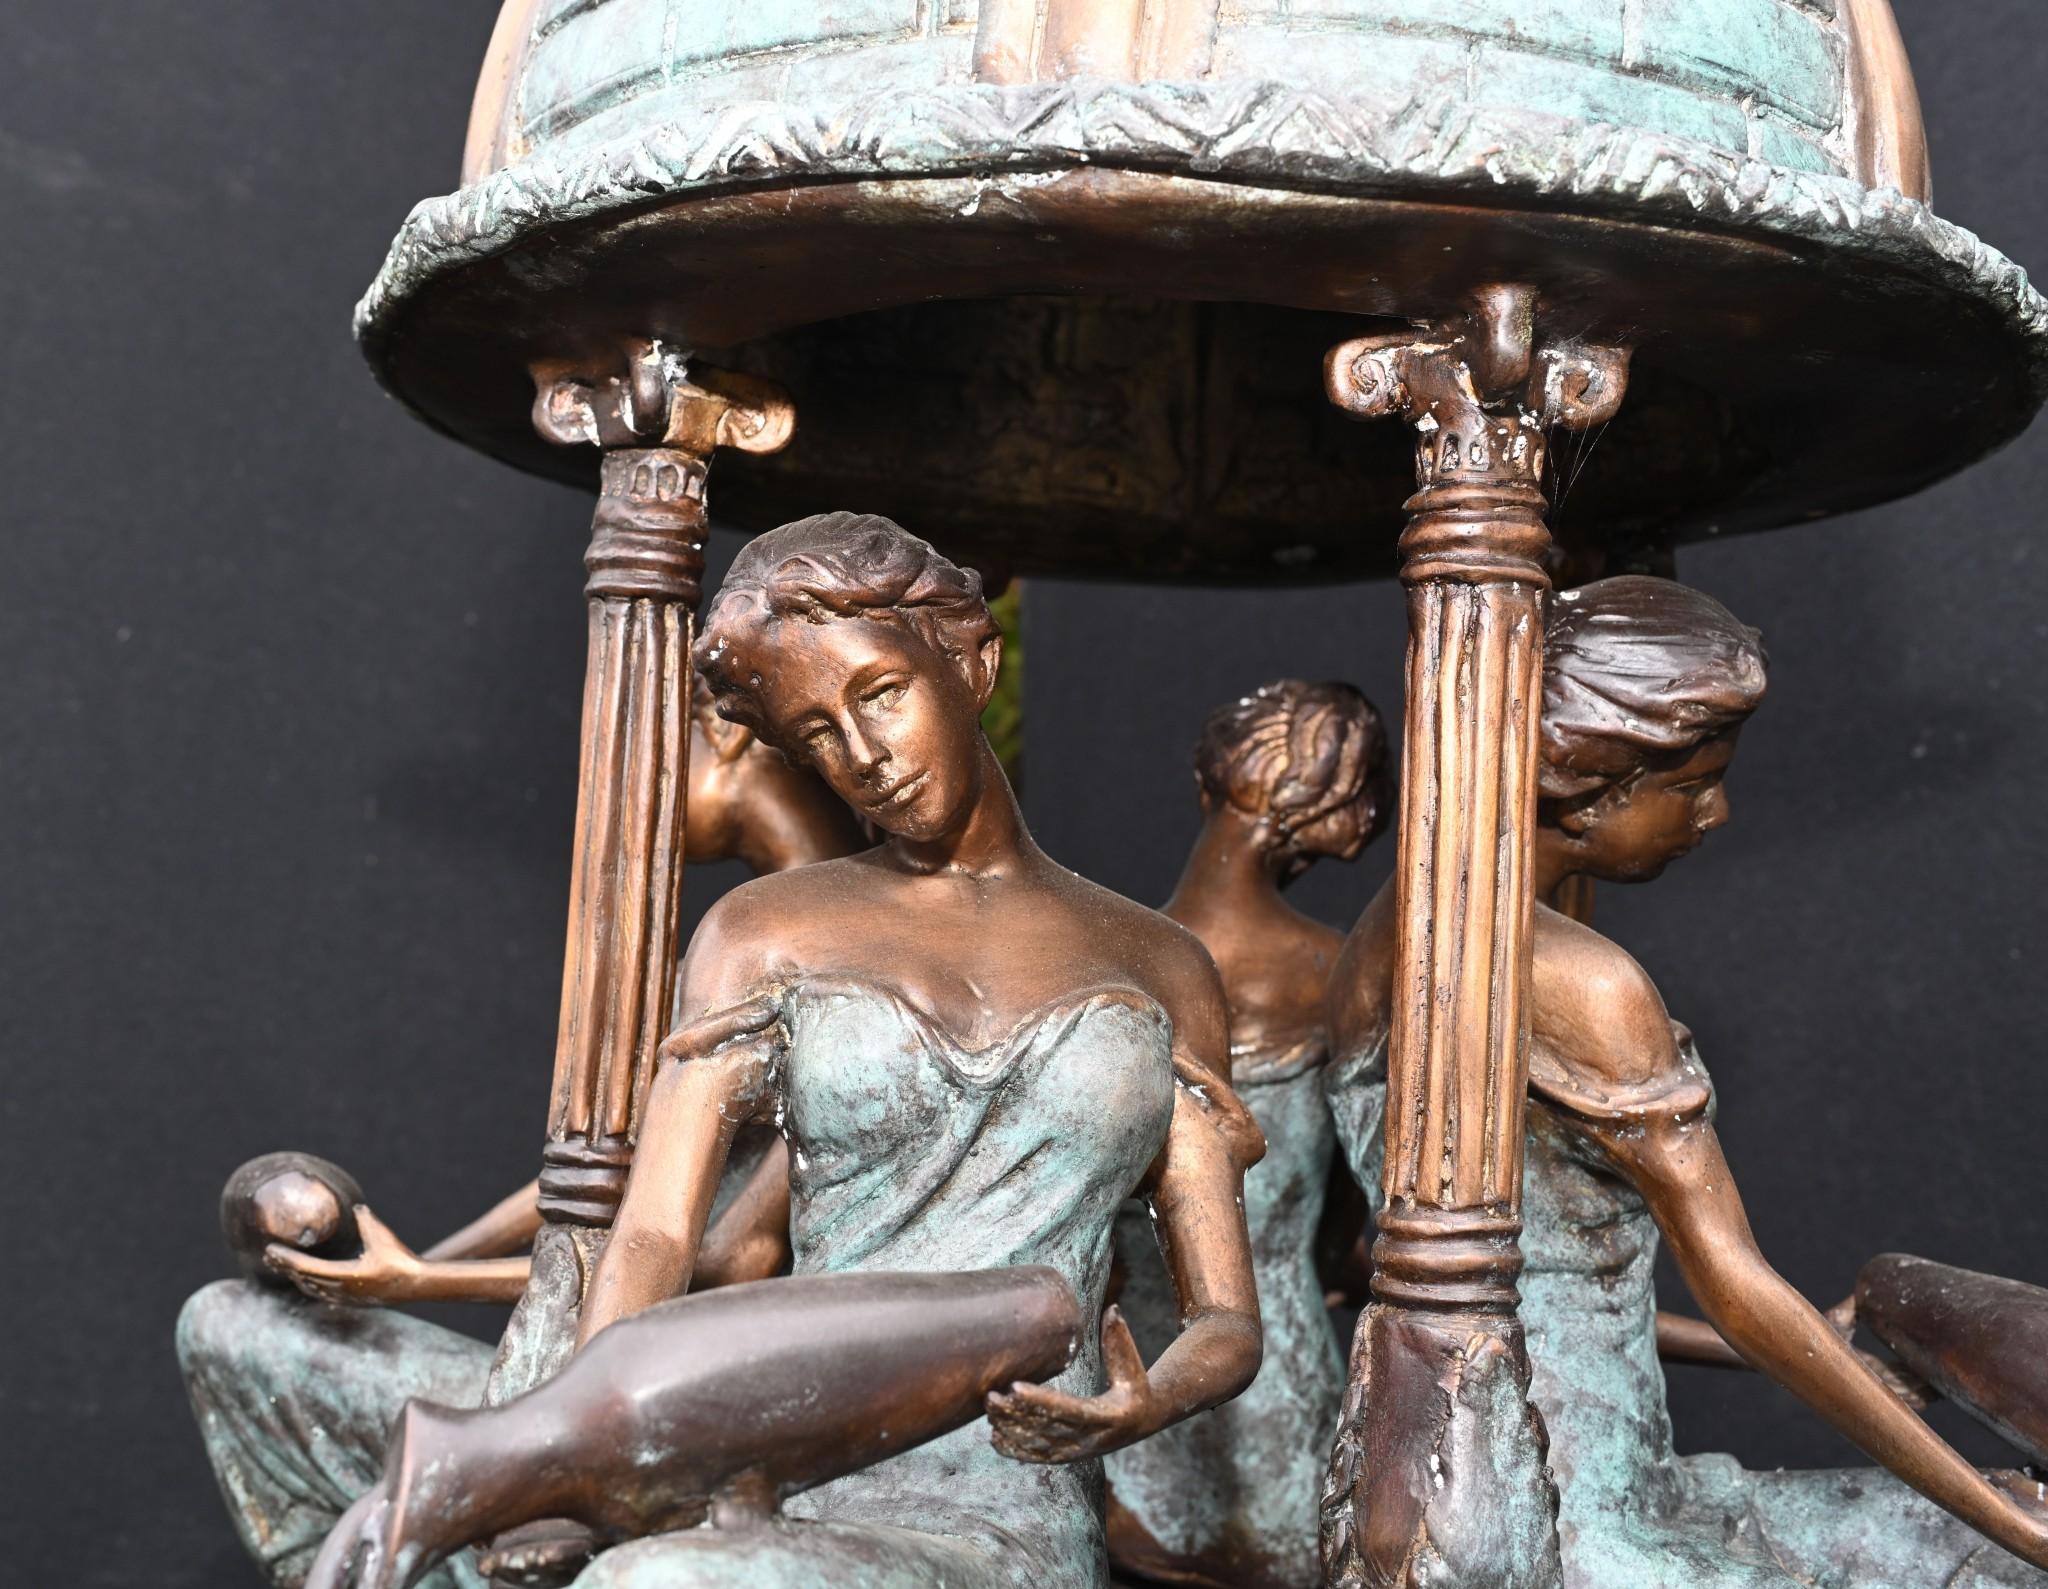 Ravissante grande fontaine italienne en bronze ornée de vierges et de muses.
La pièce mesure près de 2 mètres de haut - 238 CM de bonne taille.
La colonne centrale est soutenue par les quatre jeunes filles classiques vêtues de toges.
Ensuite,